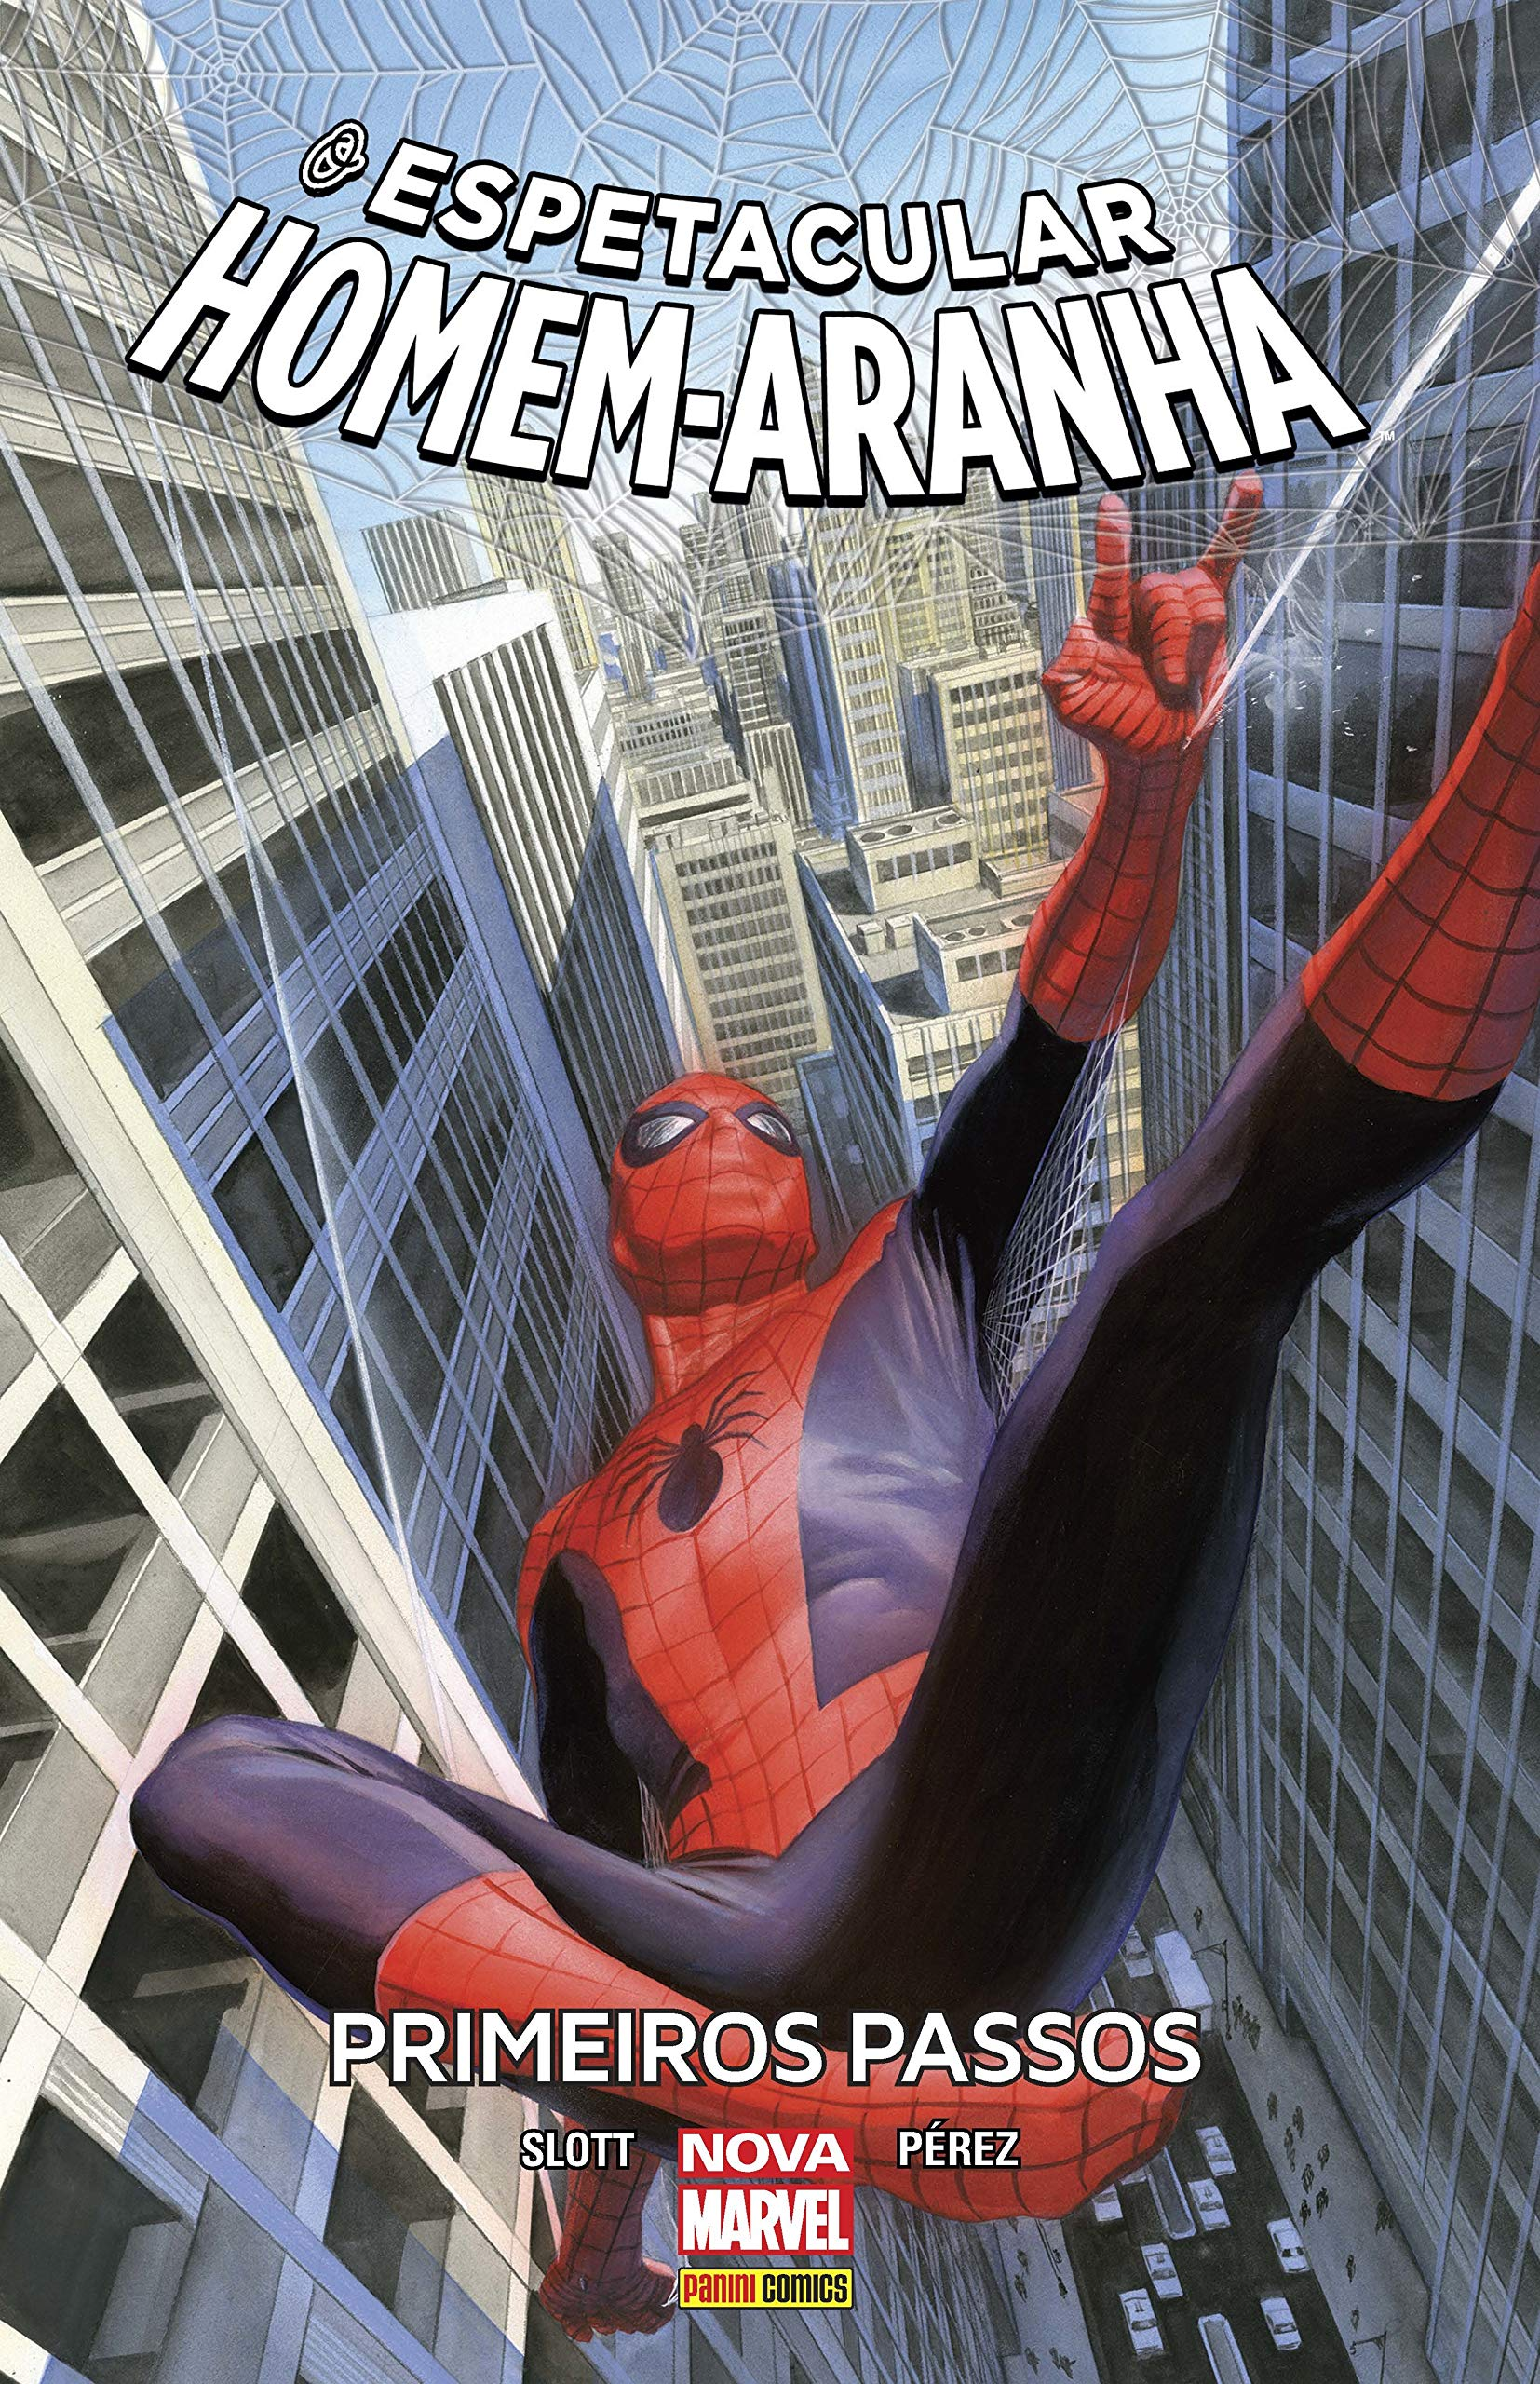 Marvel's Spider-Man 2 acerta com sequência honesta e espetacular para fãs